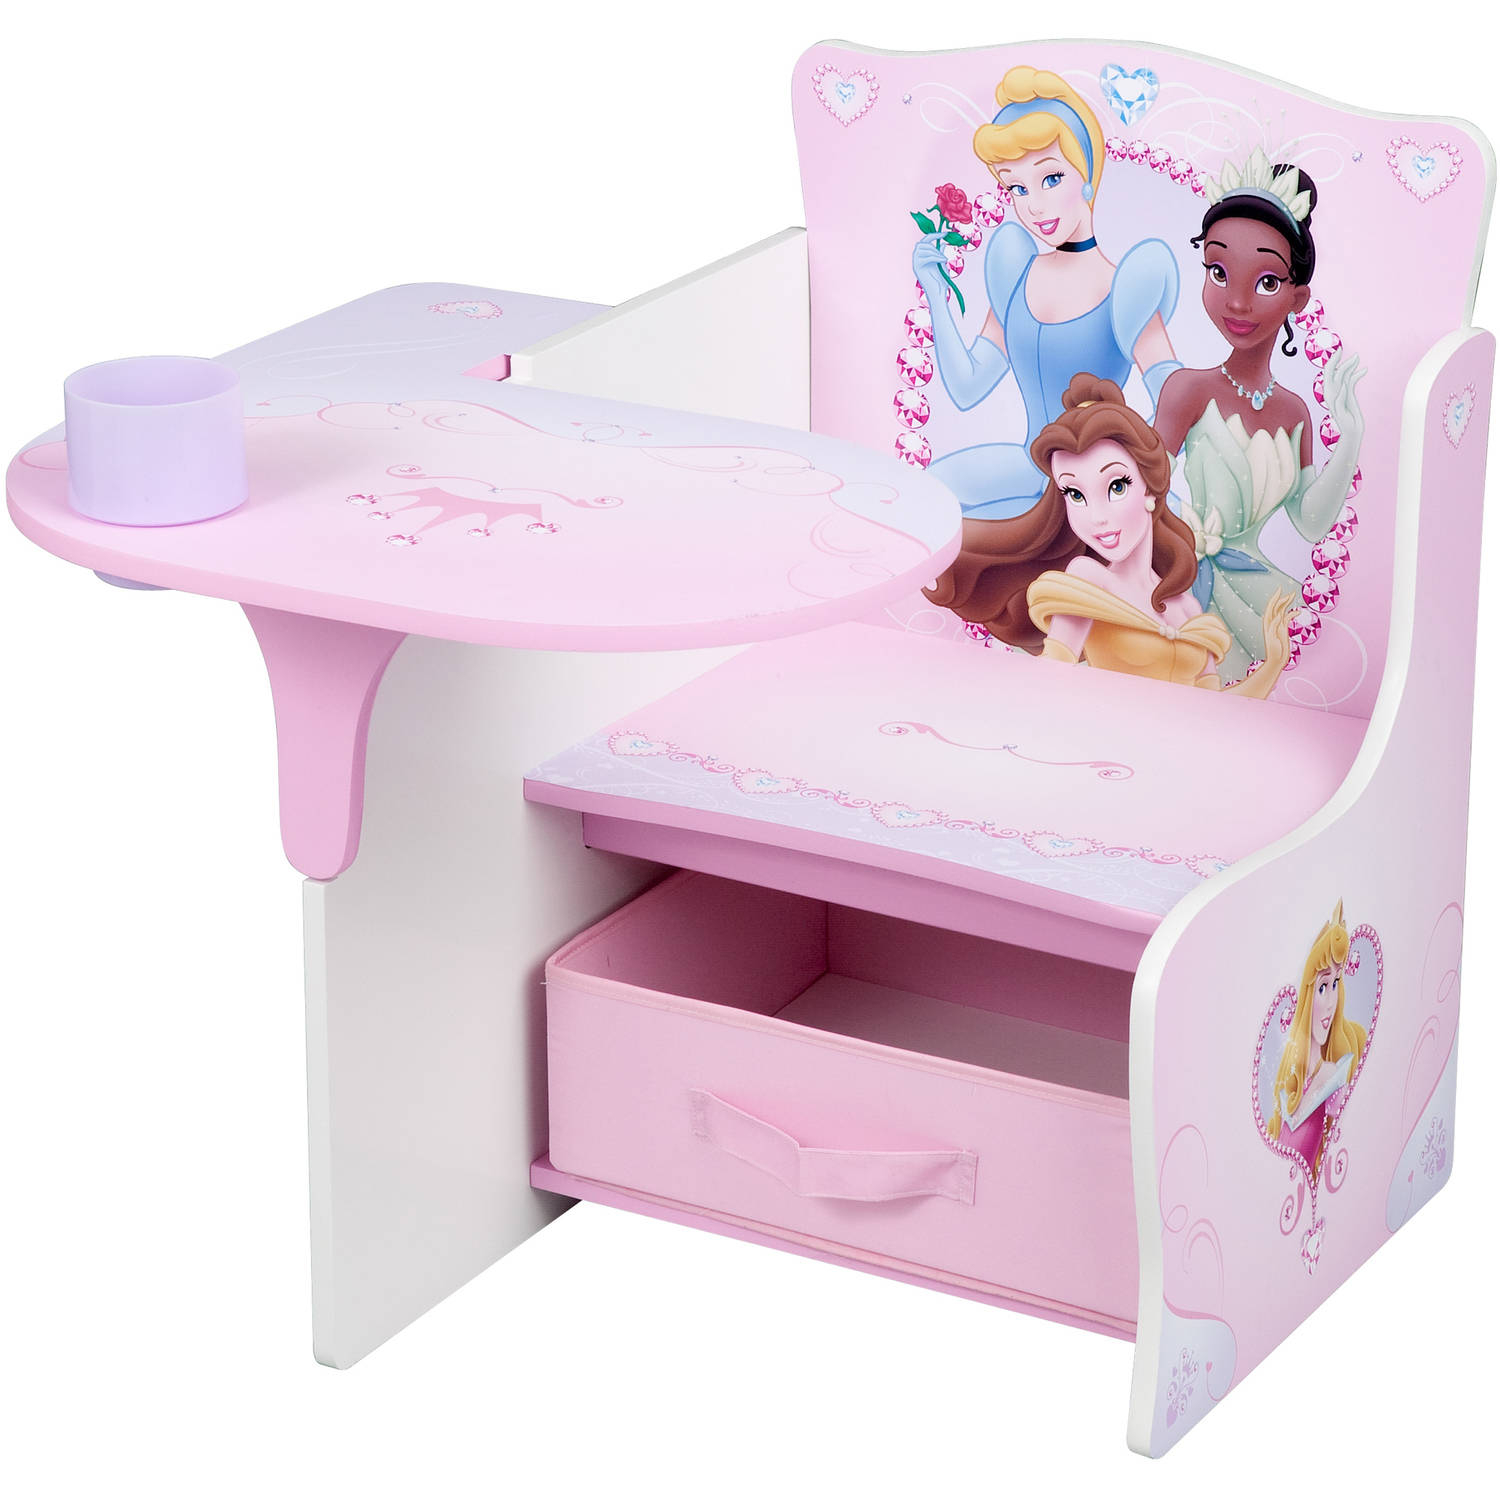 Delta Children Chair Desk With Storage Walmart within sizing 1500 X 1500